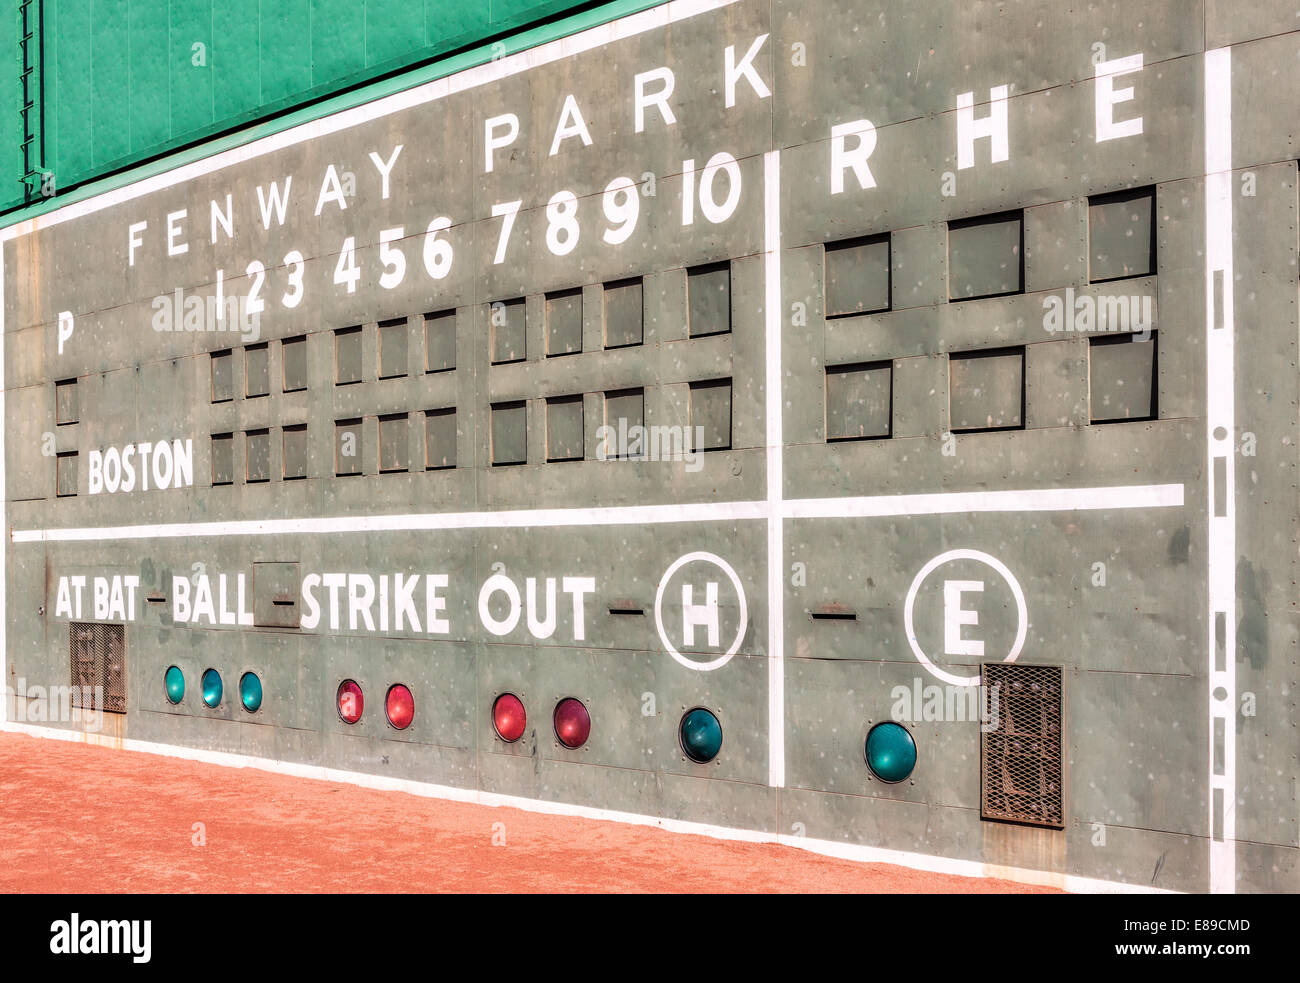 Fenway Park's Green Monster Manual de bord. Le monstre vert est un surnom populaire pour les trente-sept pieds, deux pouces, haute champ gauche mur à Fenway Park, domicile de l'équipe de baseball des Boston Red Sox. Il est toujours mis à jour à la main de derrière le mur tout au long de la partie. enway Park est le stade des Boston Red Sox de l'équipe de la Ligue Majeure de Baseball depuis qu'il a ouvert en 1912 et c'est le plus ancien stade MLB. Le code Morse qui s'affiche de haut en bas dans les lignes blanches de la Ligue américaine de bord sont les initiales de l'ancien propriétaires Thomas A. Yawkey et Jean R. Yawkey. Banque D'Images